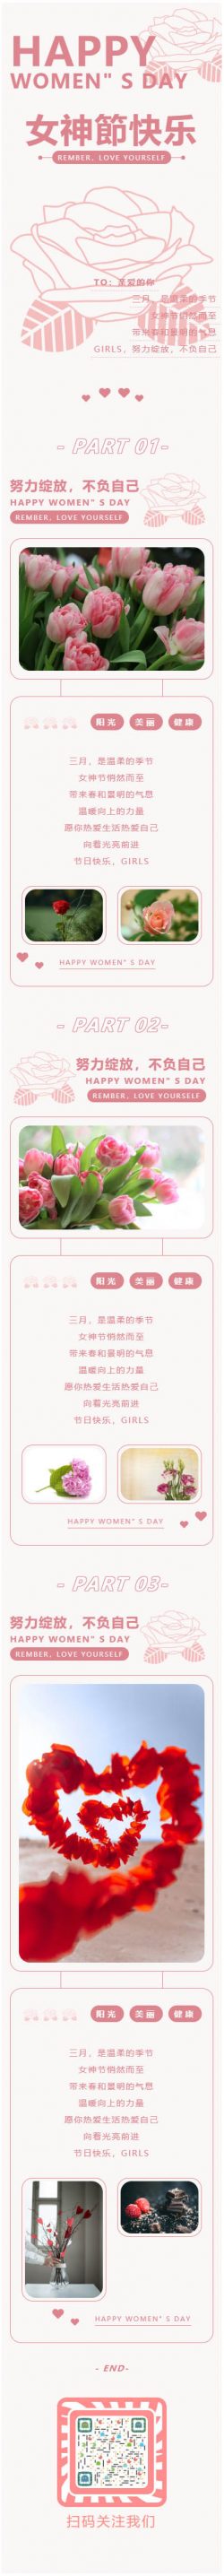 三八节女神节妇女节微信公众号推送图文公众平台推文素材文章 图文资料